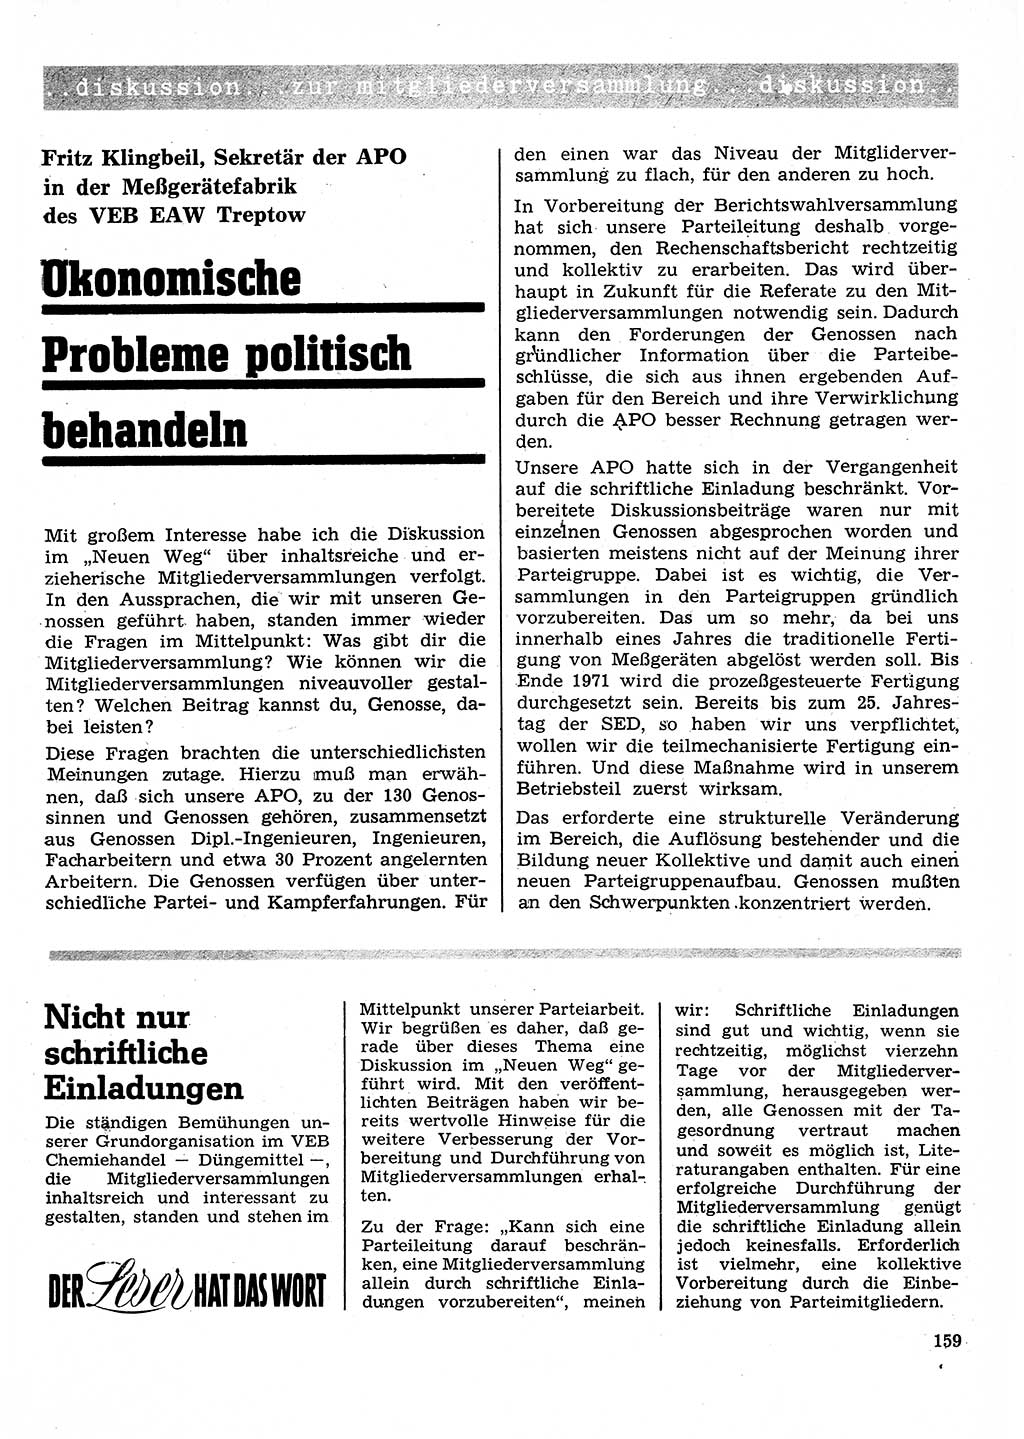 Neuer Weg (NW), Organ des Zentralkomitees (ZK) der SED (Sozialistische Einheitspartei Deutschlands) für Fragen des Parteilebens, 26. Jahrgang [Deutsche Demokratische Republik (DDR)] 1971, Seite 159 (NW ZK SED DDR 1971, S. 159)